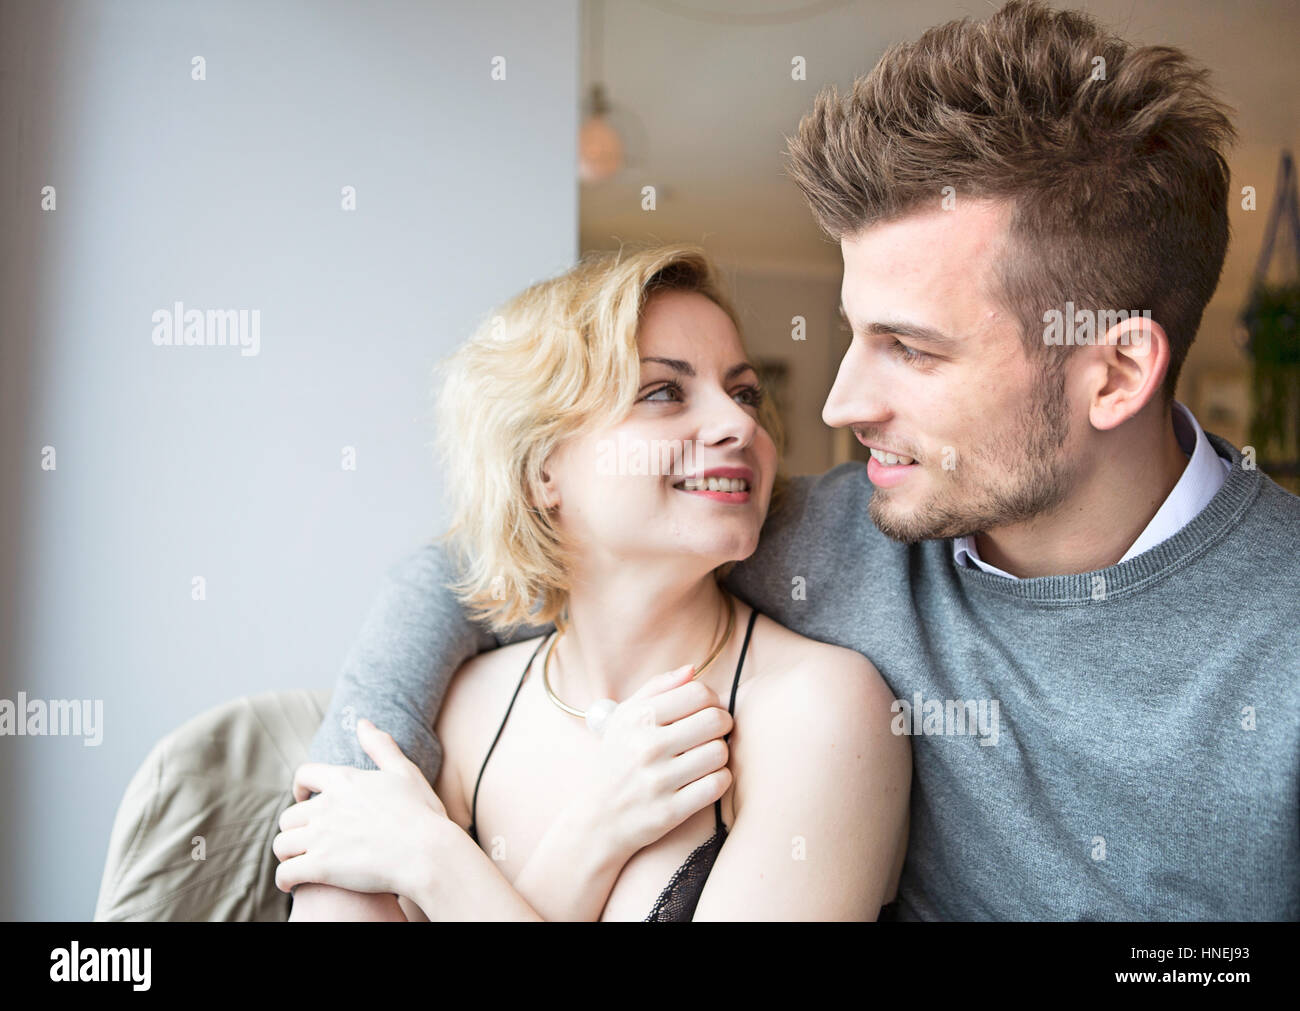 Glückliches junges Paar sahen einander im café Stockfoto